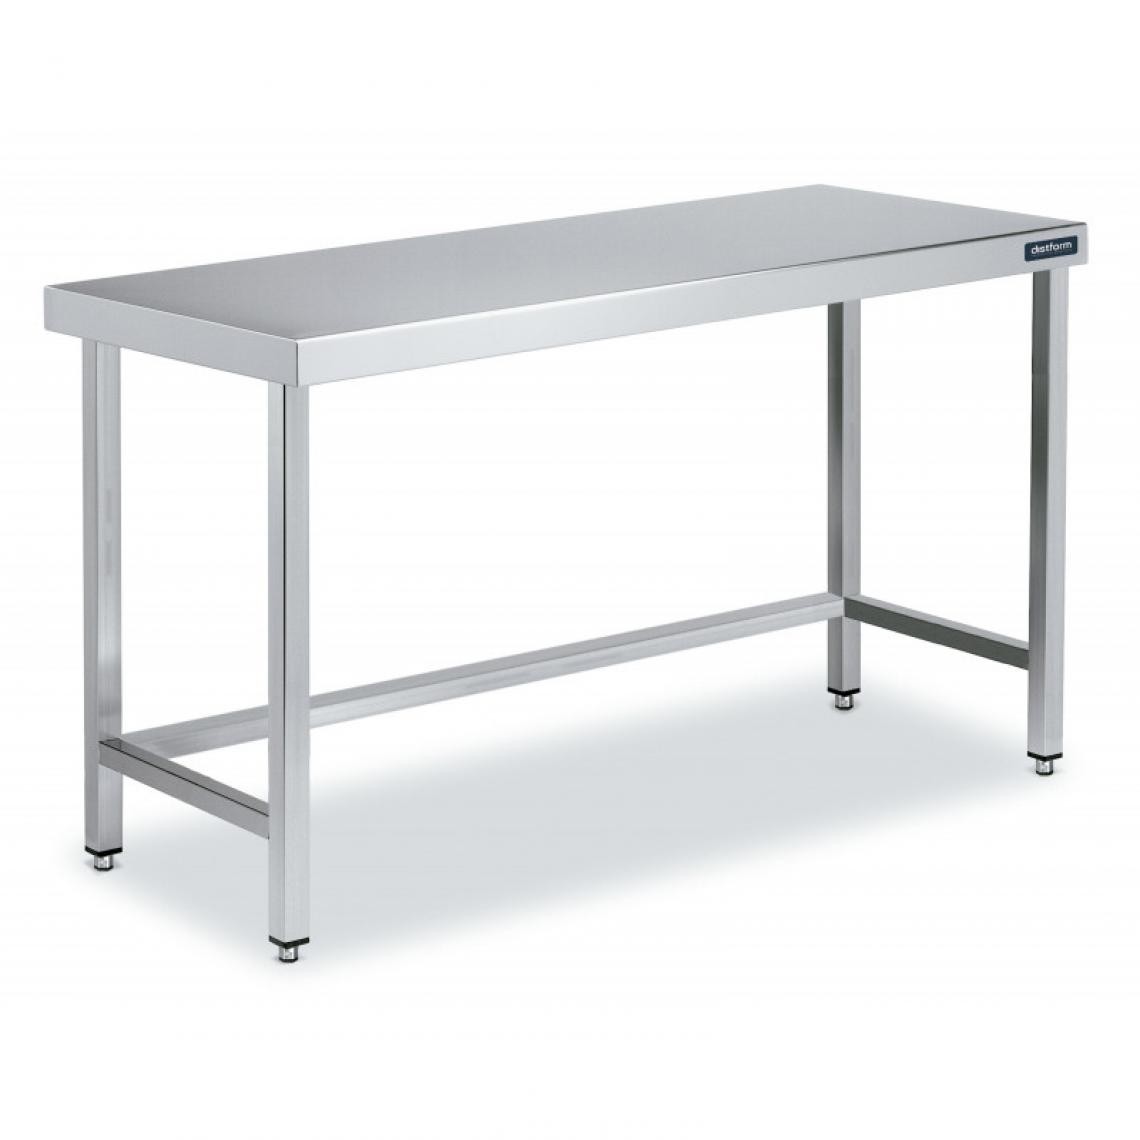 DISTFORM - Table Centrale en Inox avec renforts Profondeur 700 mm - Distform - Acier inoxydable1600x700 - Tables à manger